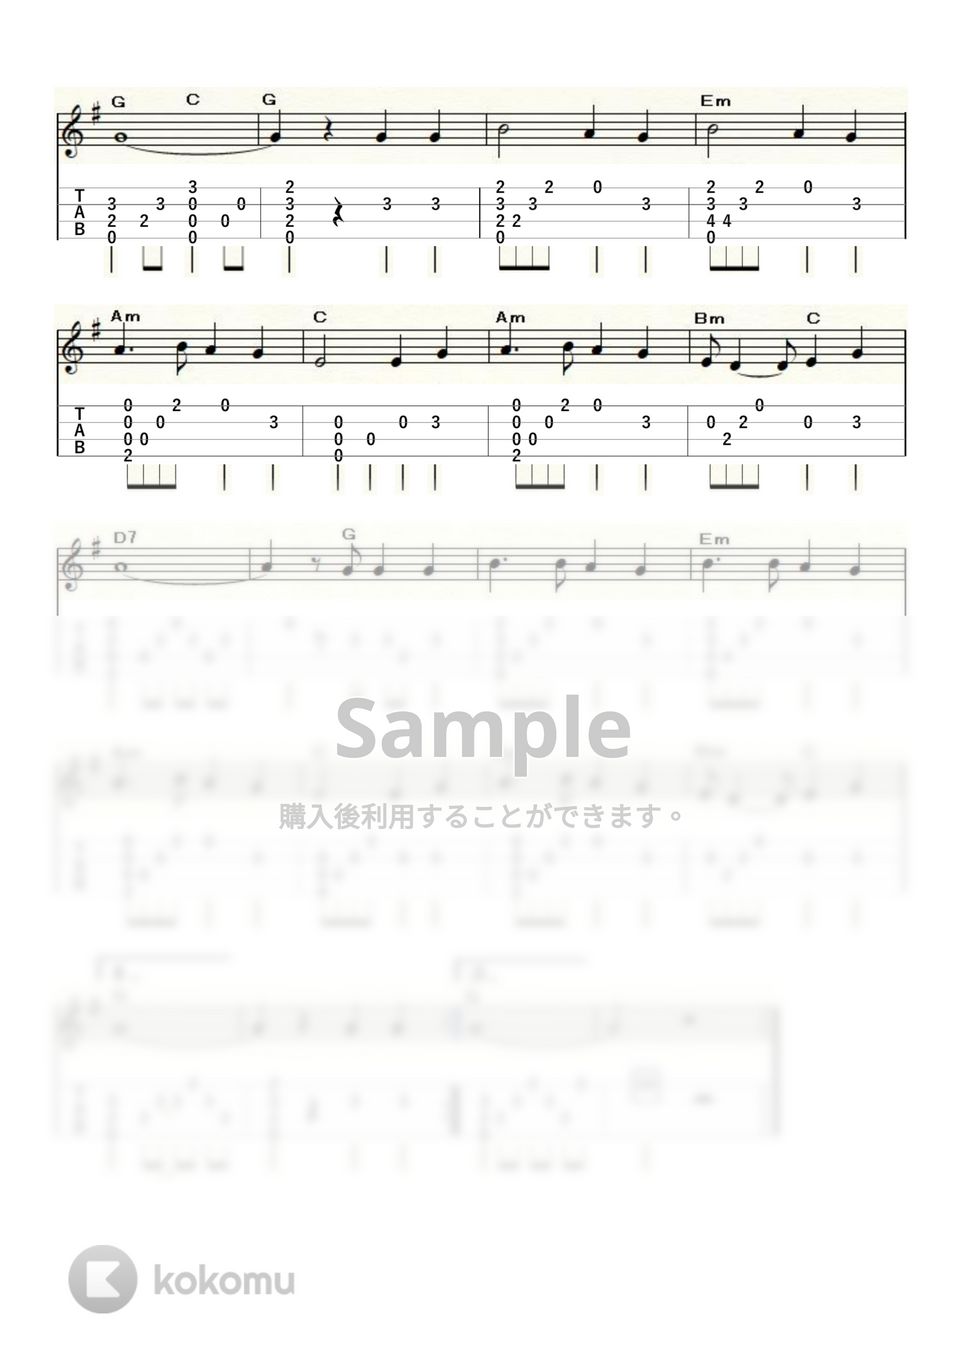 ピーター・ポール&マリー - 500miles (ｳｸﾚﾚｿﾛ / High-G・Low-G / 初級～中級) by ukulelepapa